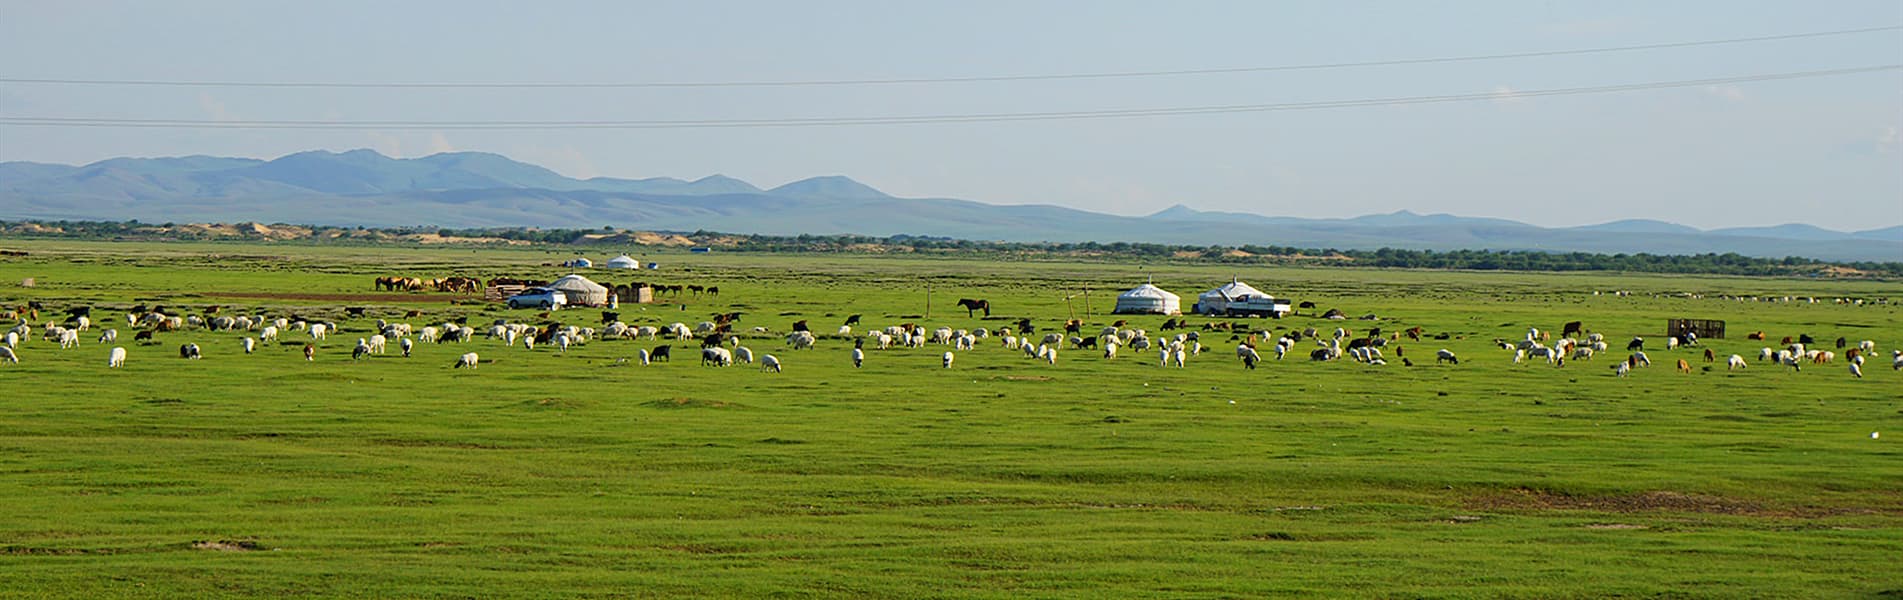 Grassland in Mongolia